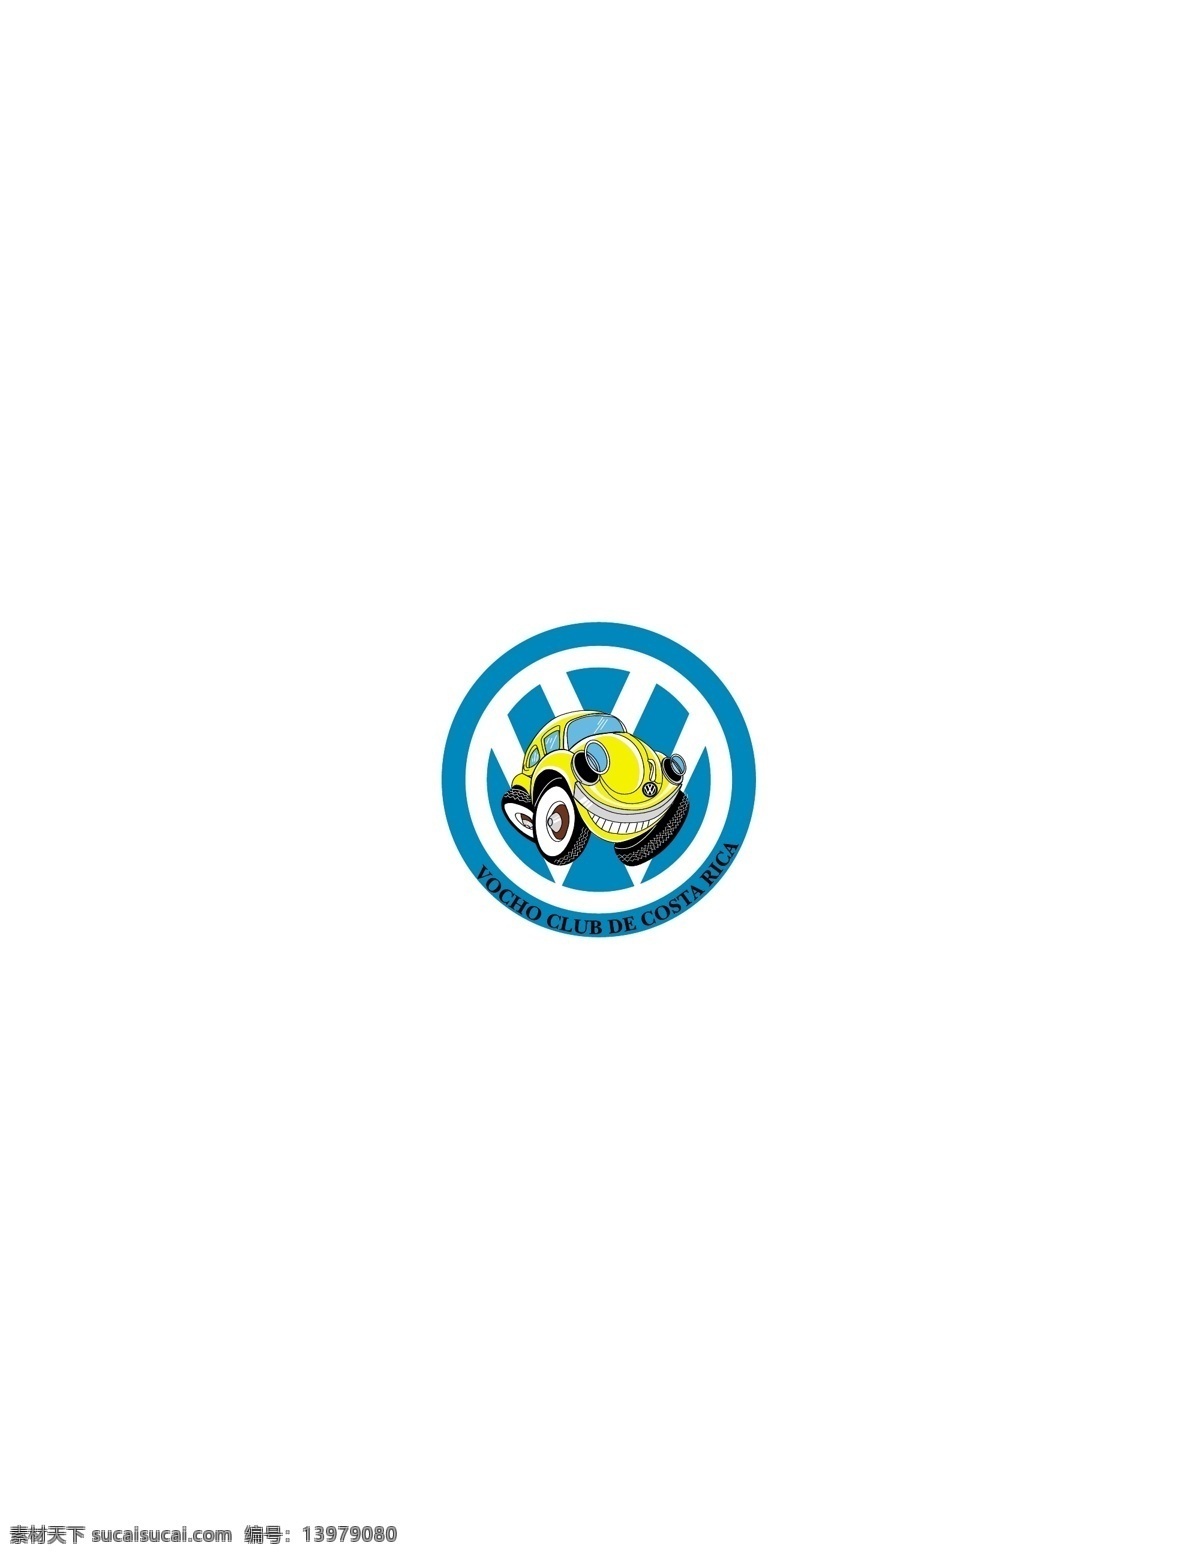 logo大全 logo 设计欣赏 商业矢量 矢量下载 volkswagen vocho club de costa rica 标志设计 欣赏 网页矢量 矢量图 其他矢量图